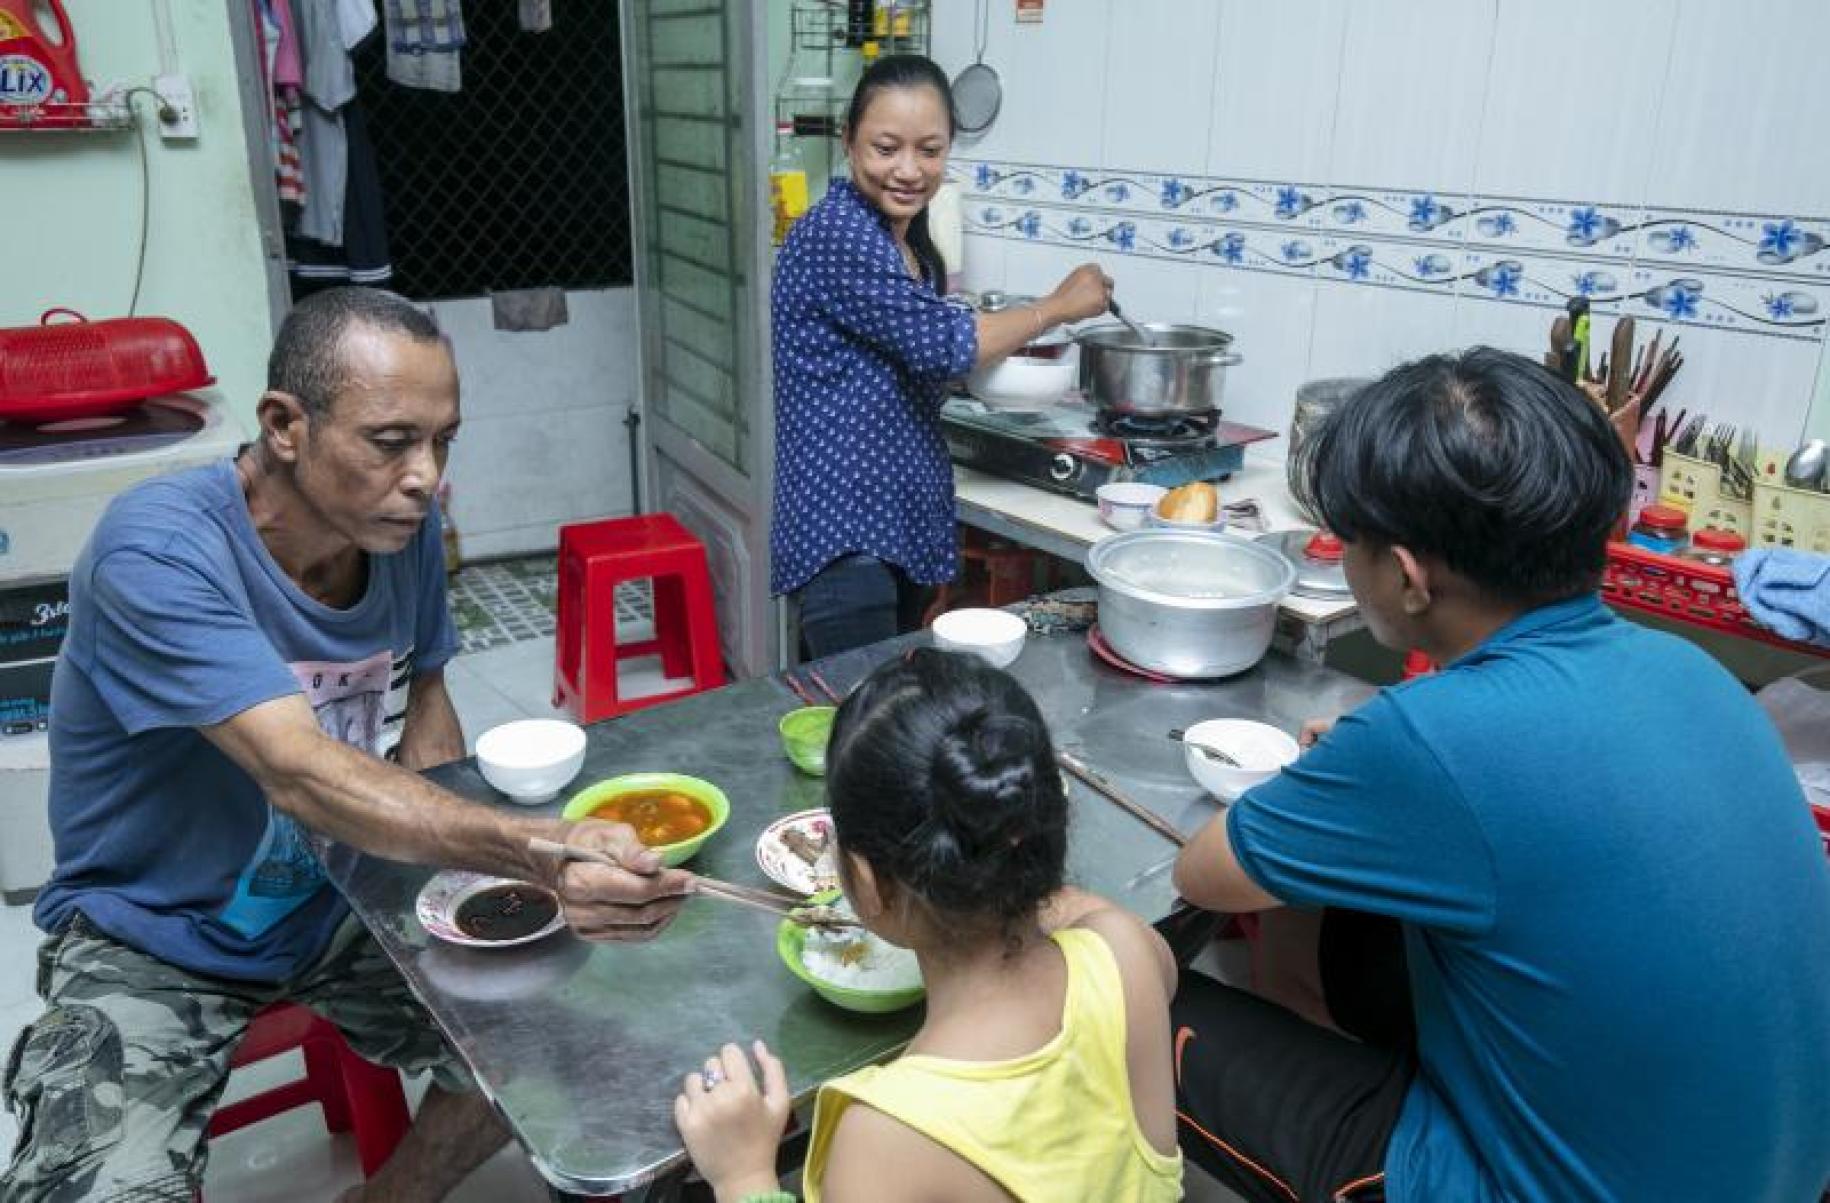 أسرة تشاو باو في المطبخ.